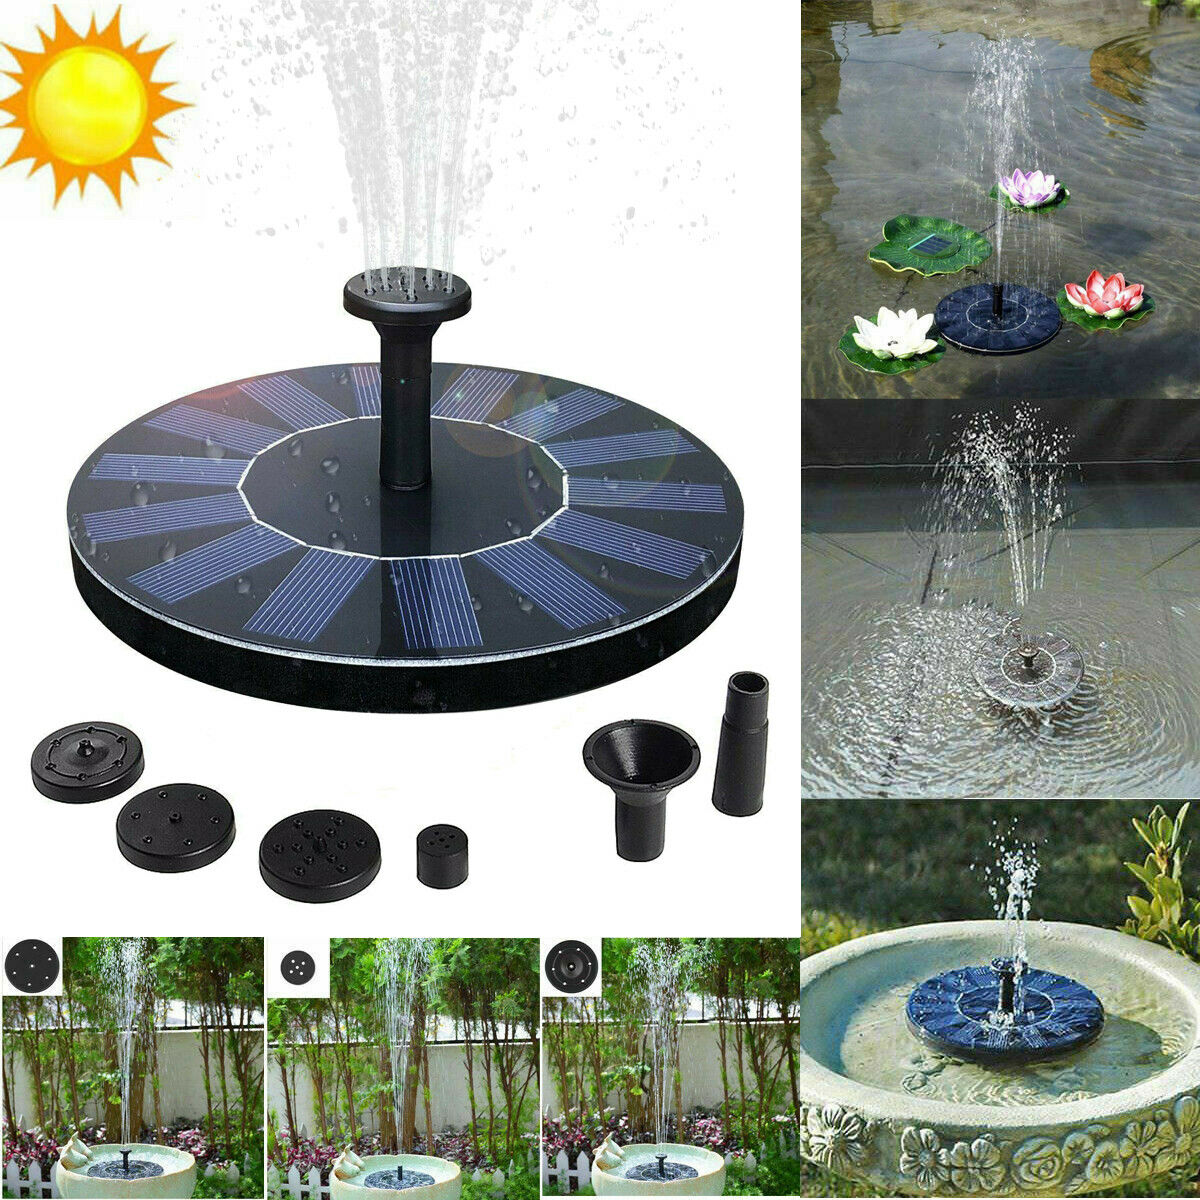 Solar Powered Fountain Pump